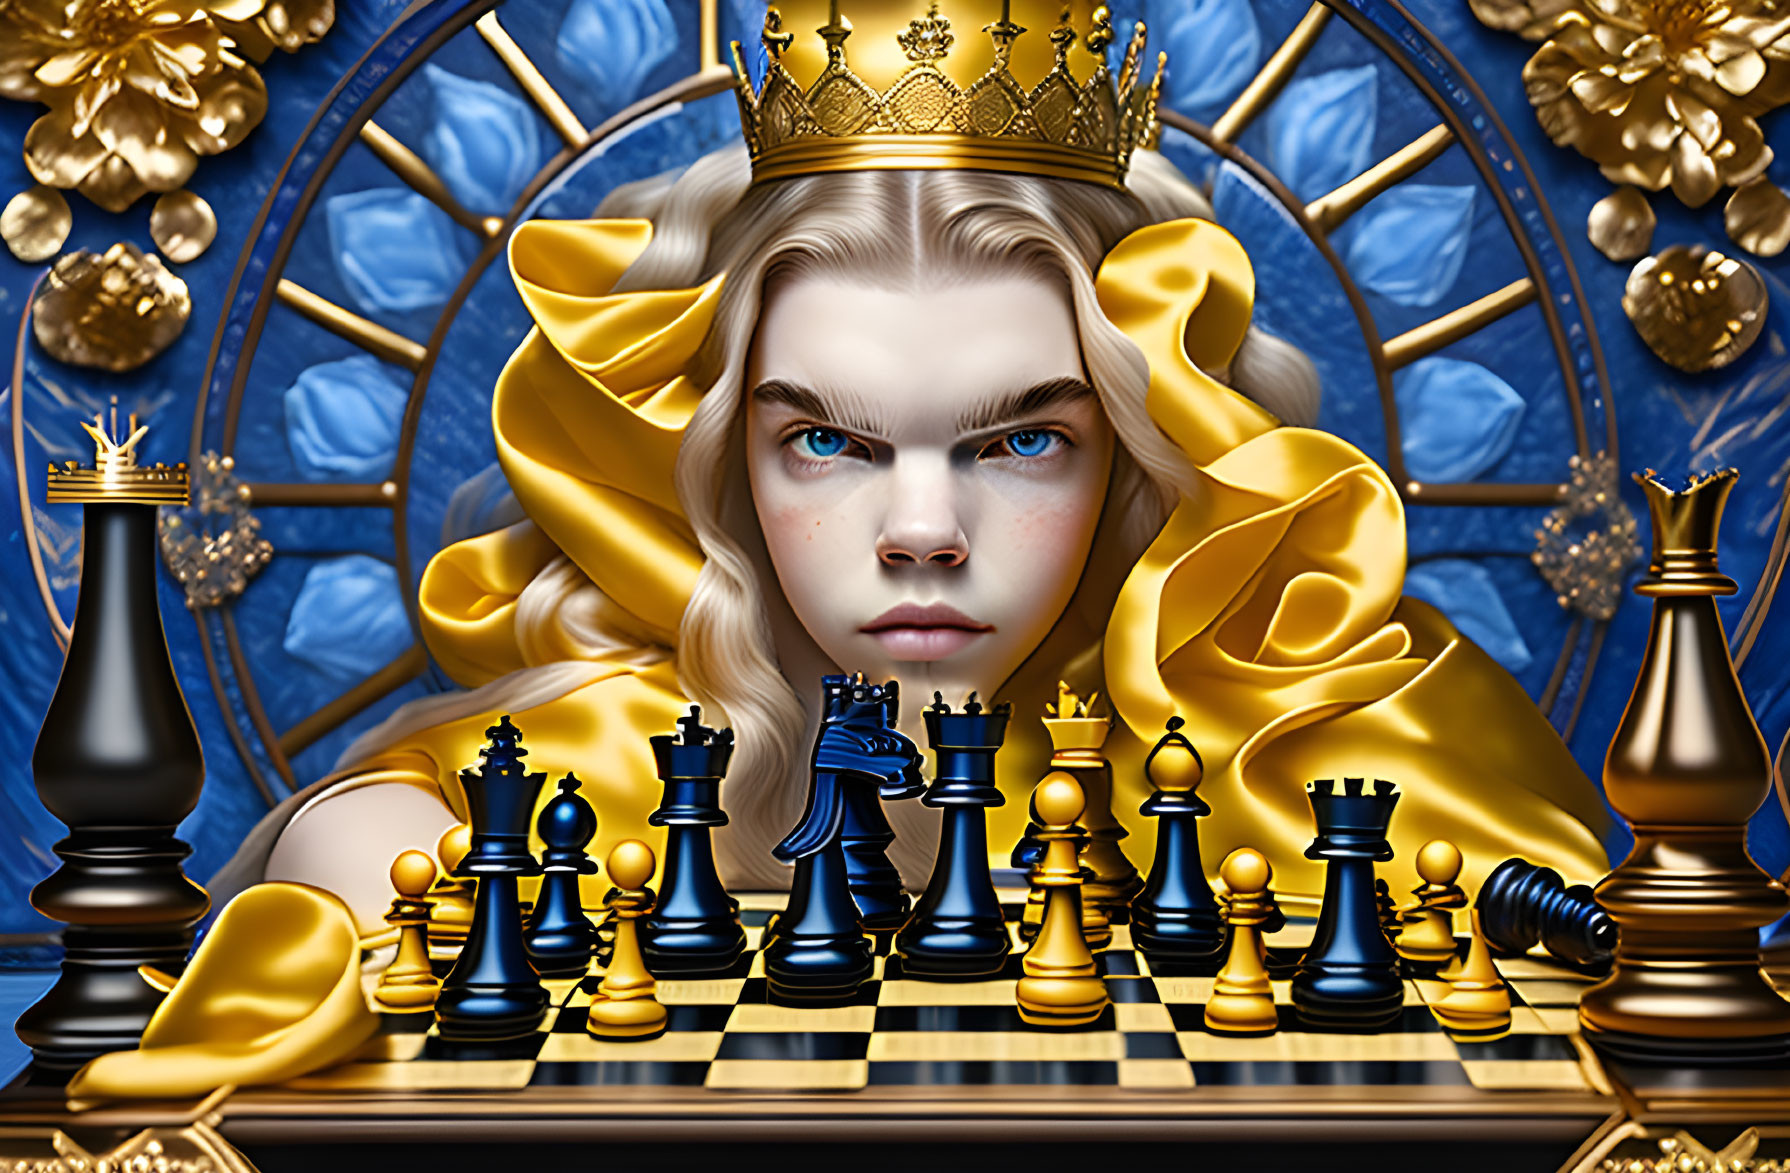 The Hyper-Realistic Chess Queen by Julia Razumova